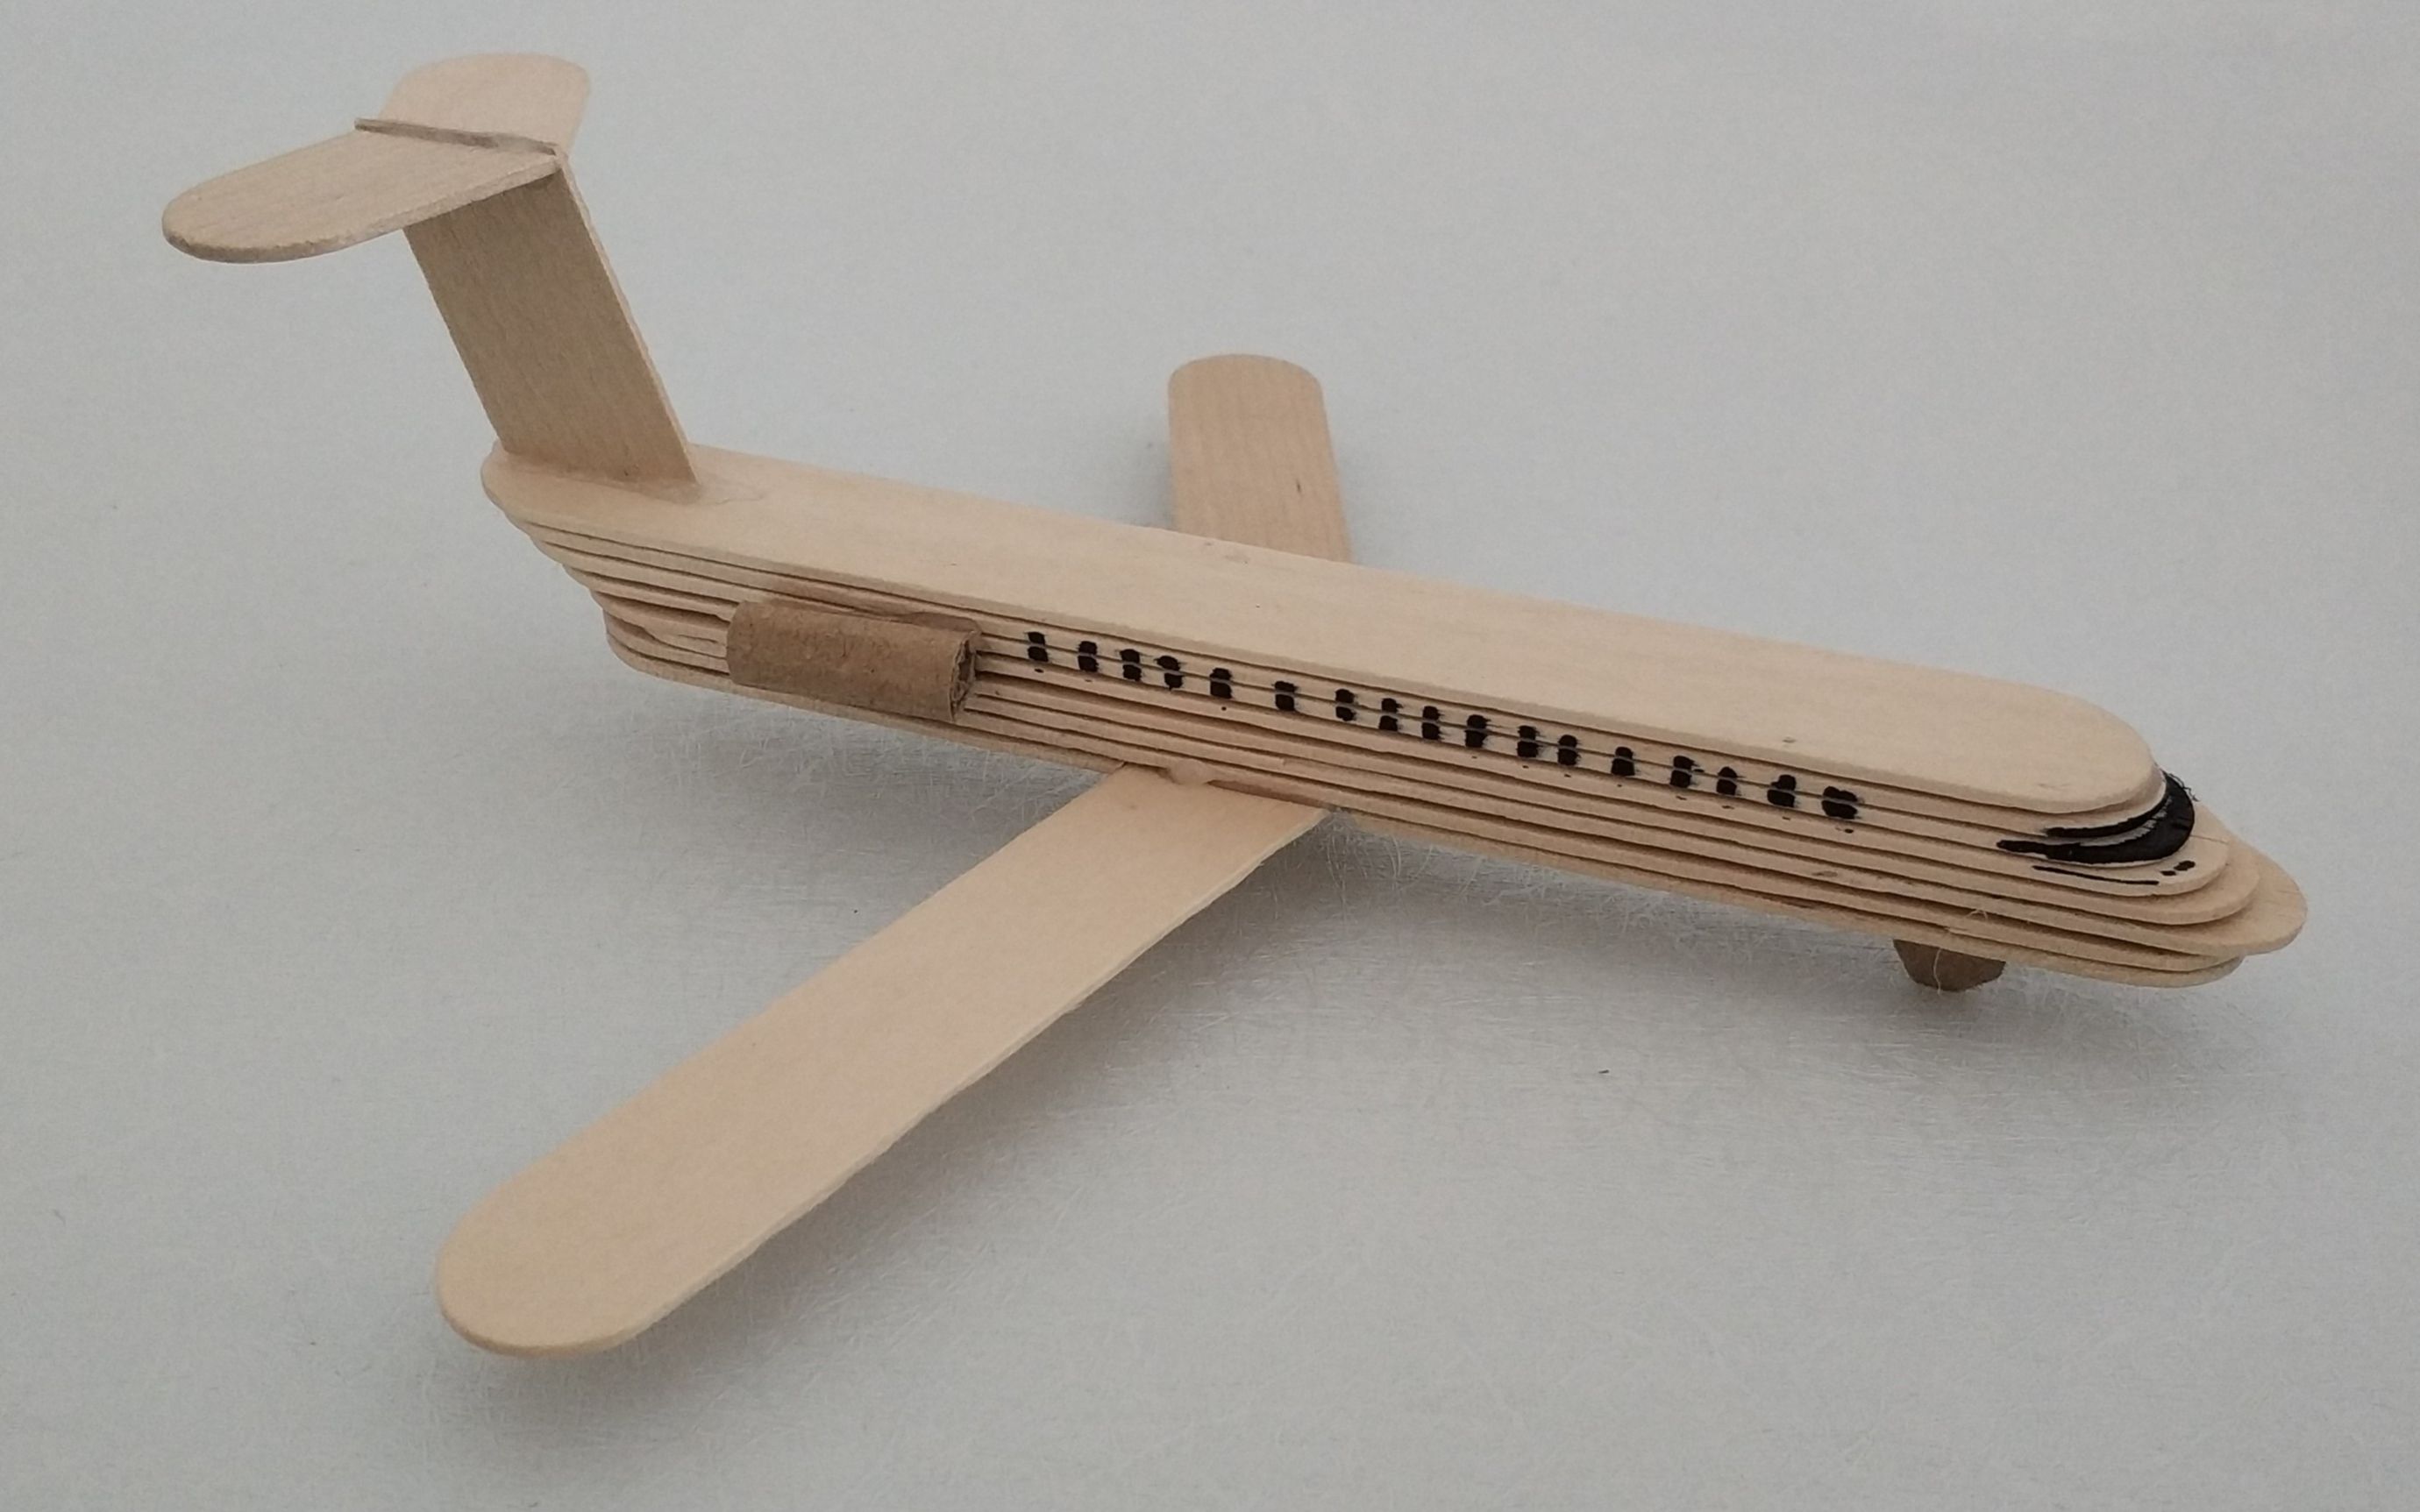 小c两分钟教你如何用雪糕棍 diy手工制作飞机客机模型!